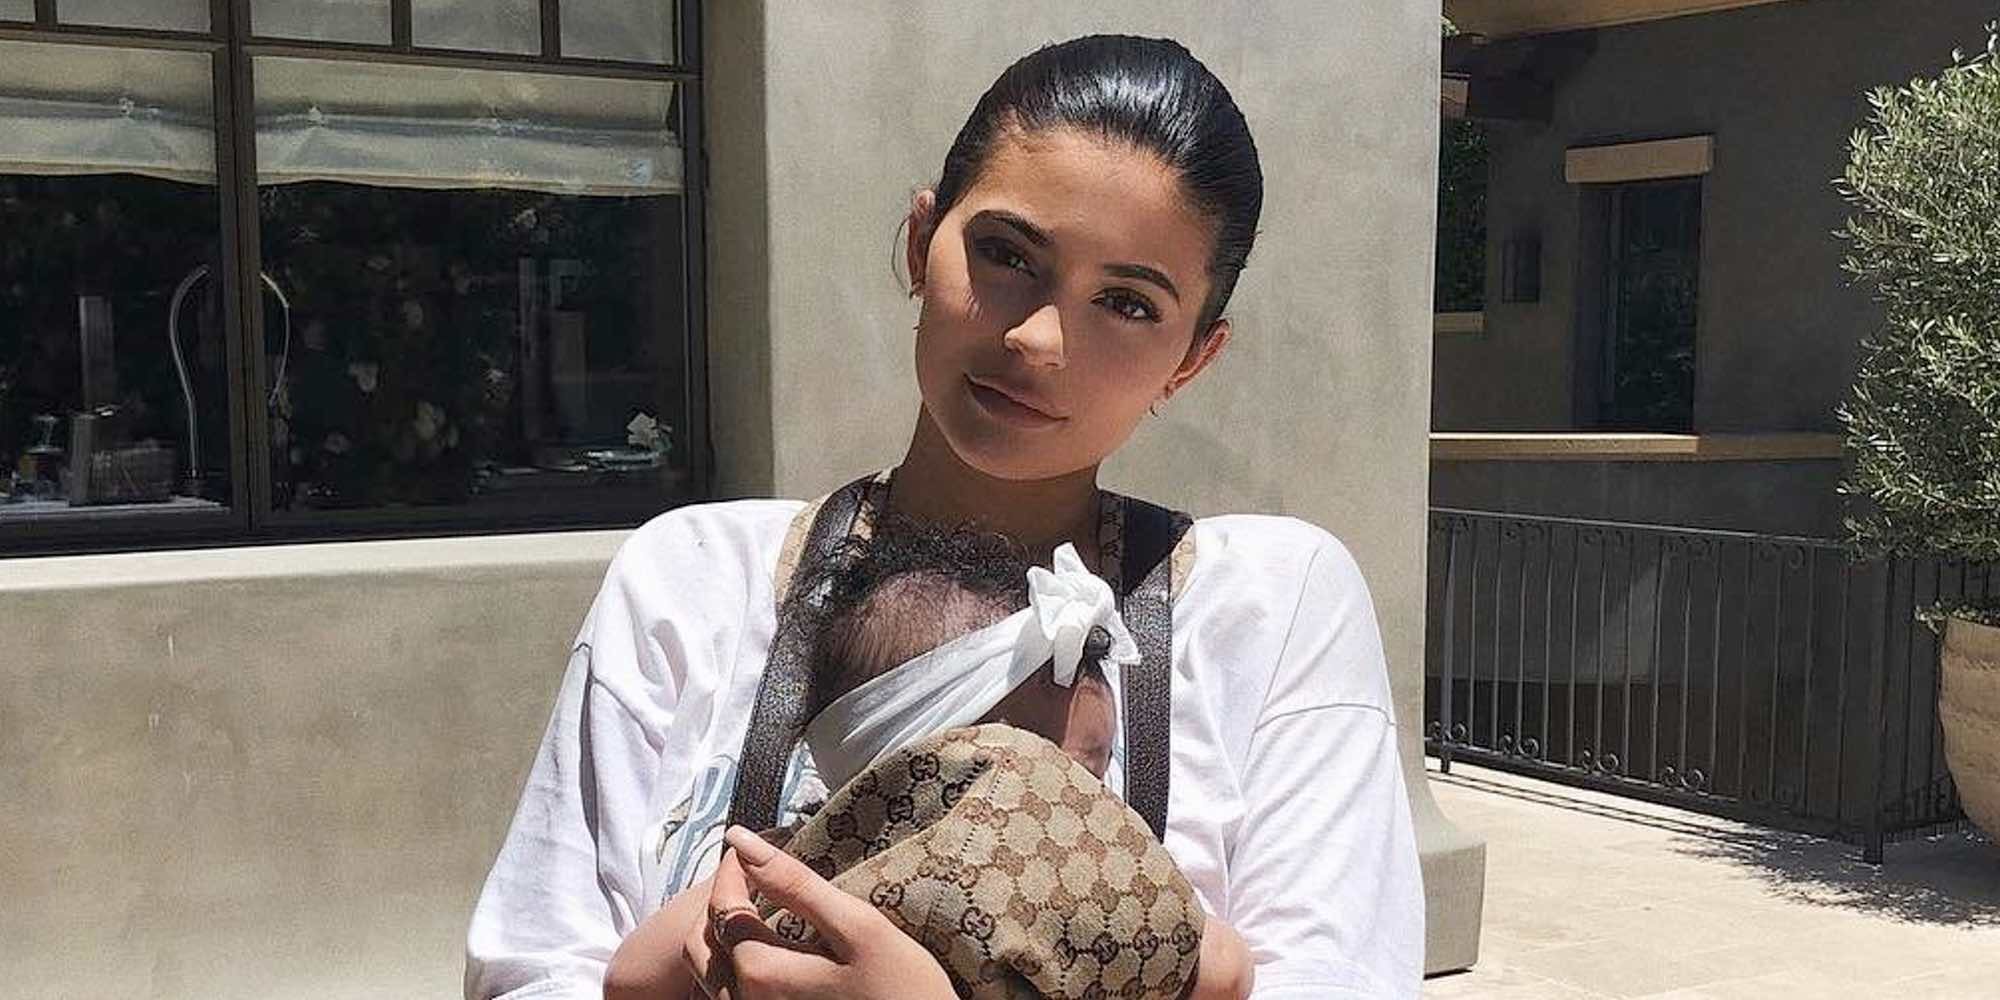 Kylie Jenner vuelve a publicar fotos de su hija Stormi Webster pero sin enseñar su carita